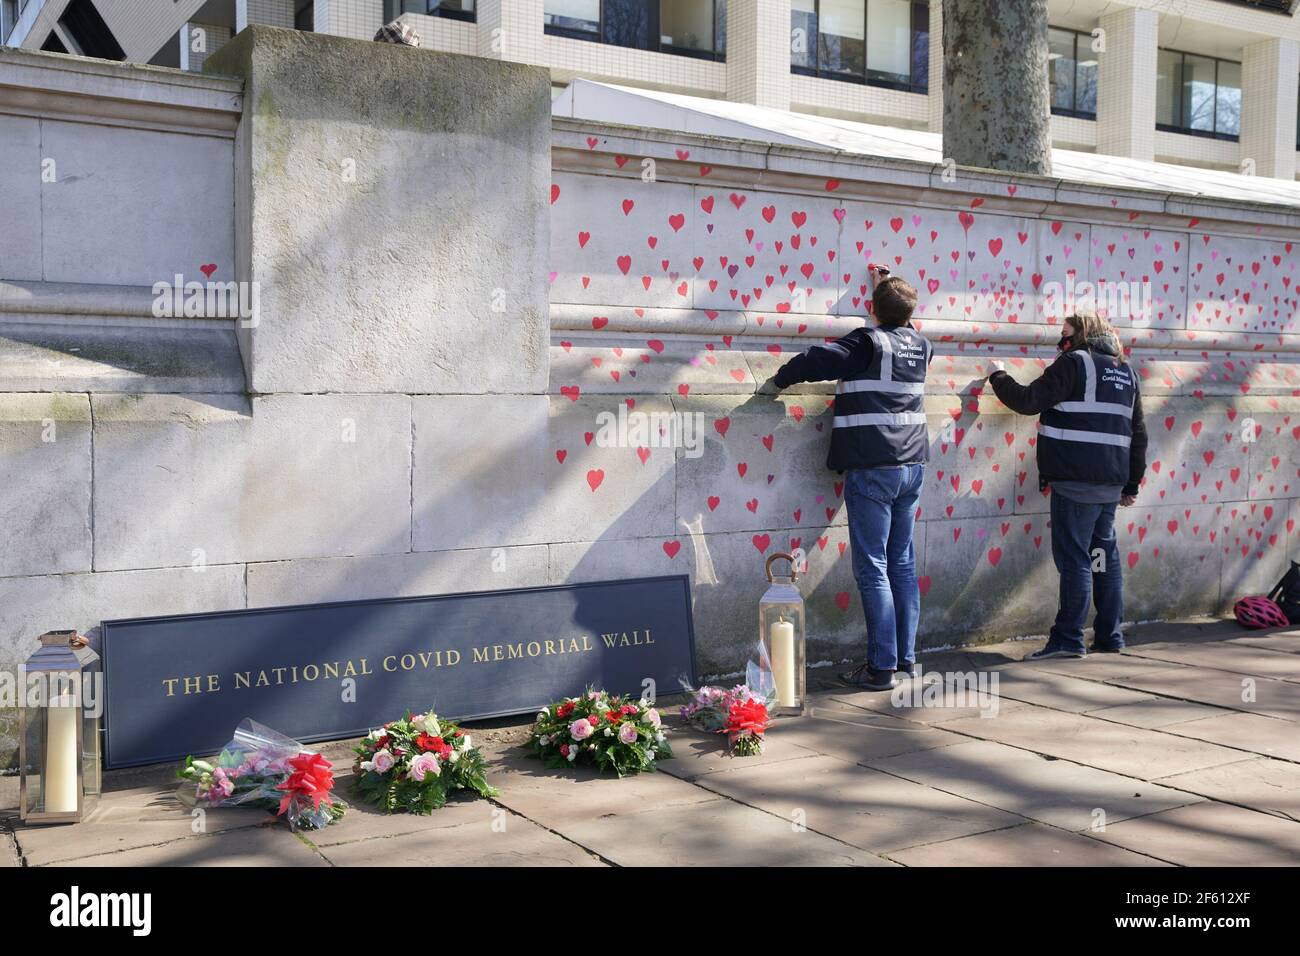 Gente pintando corazones rojos en el muro Conmemorativo COVID-19 frente a las Casas del Parlamento en Embankment, en el centro de Londres, en memoria de las más de 145.000 personas que han muerto en el Reino Unido a causa del coronavirus. Fecha del cuadro: Lunes 29 de marzo de 2021. Foto de stock